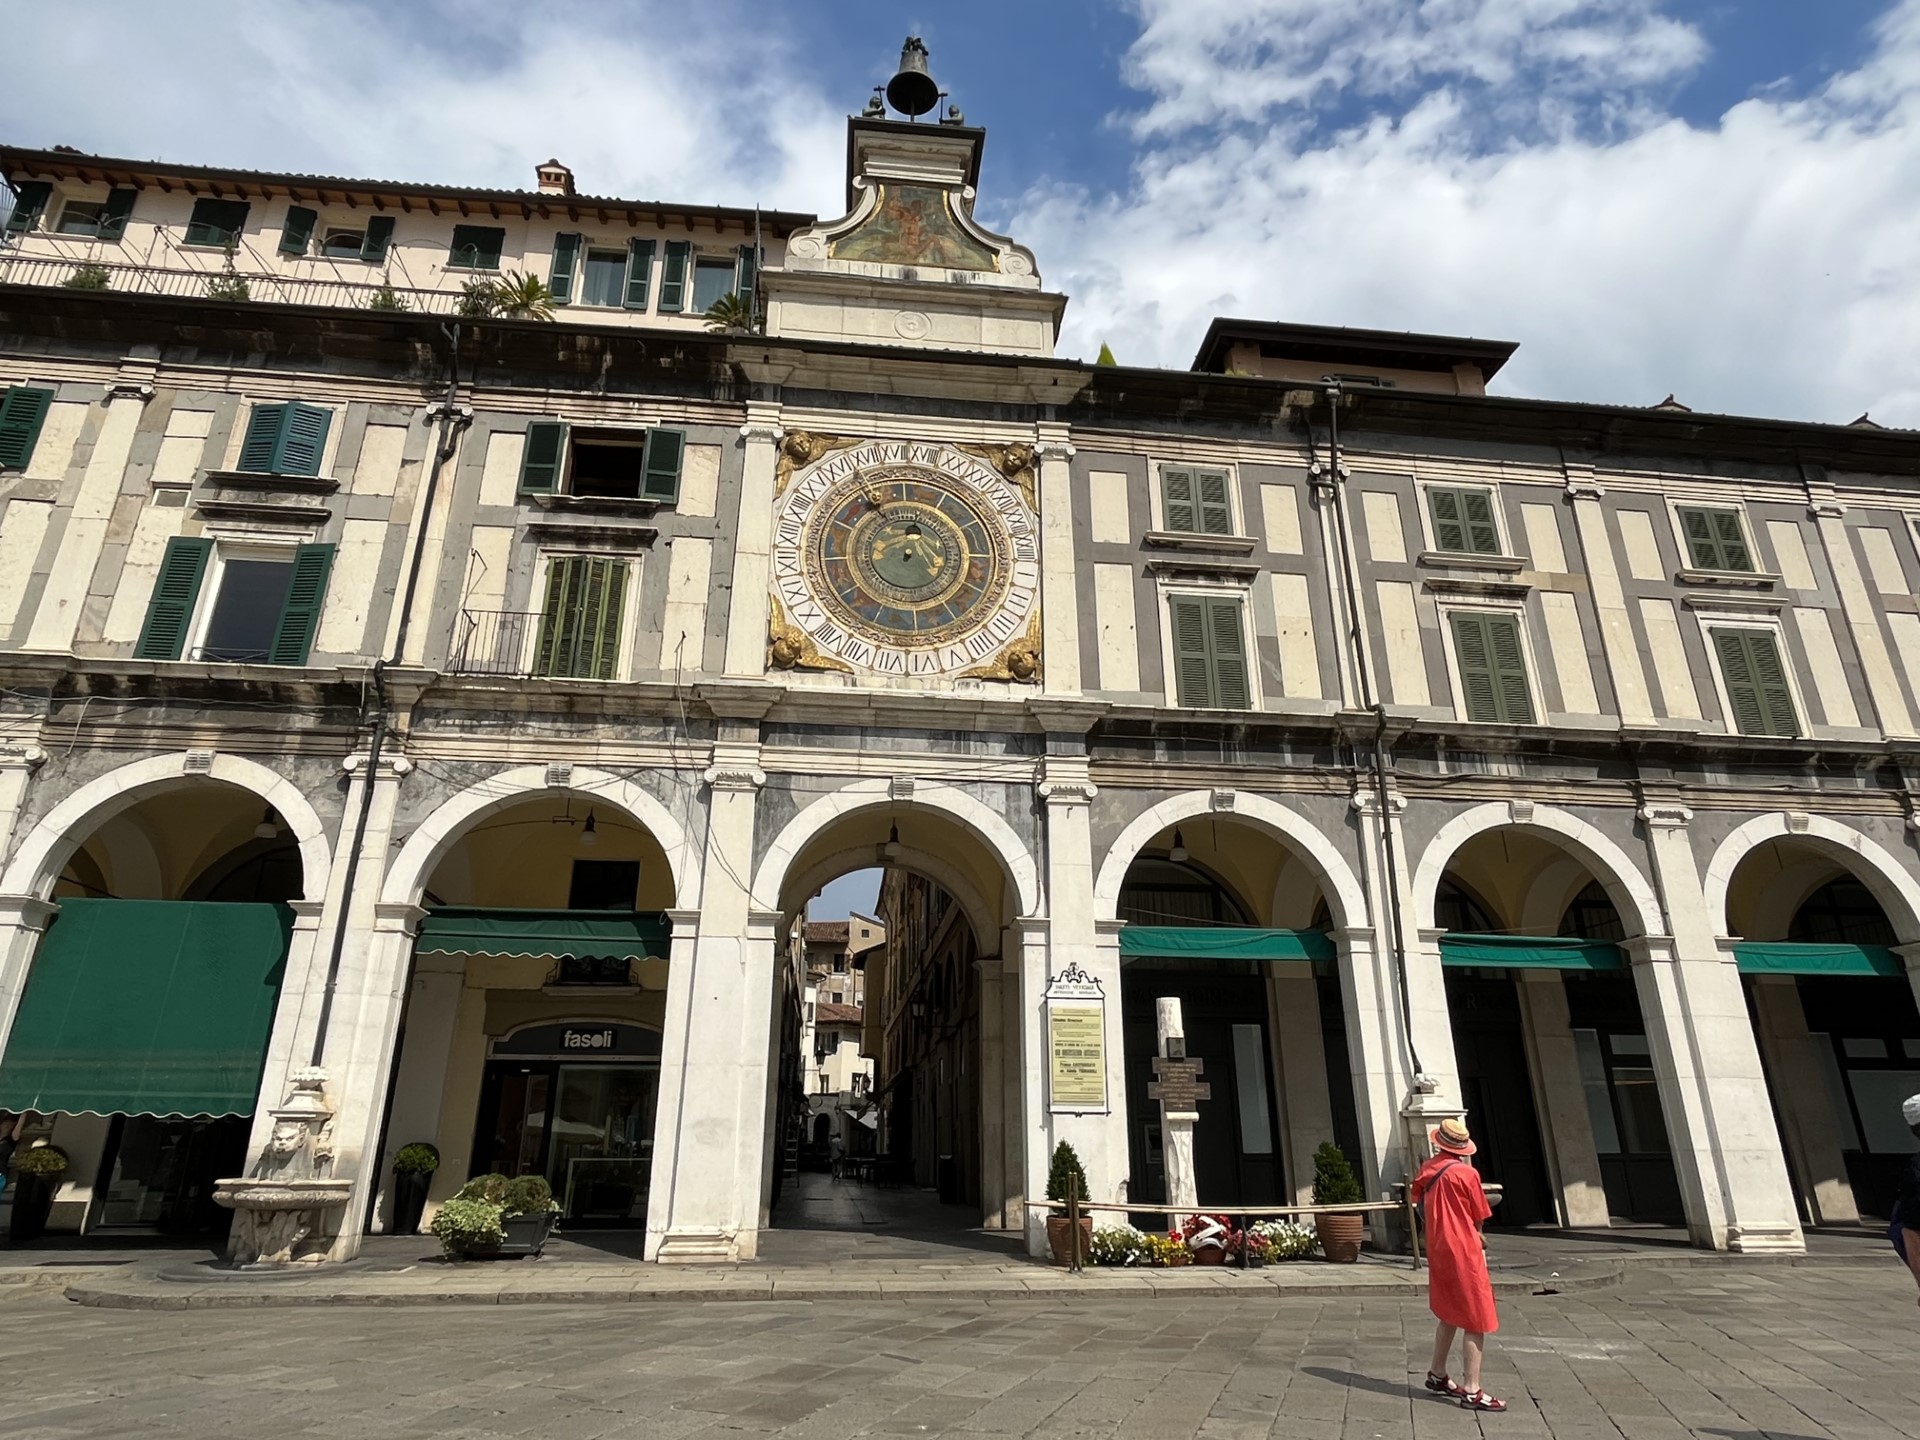 Depuis le XVIe siècle, Brescia possède une magnifique horloge astronomique (Photo PB)